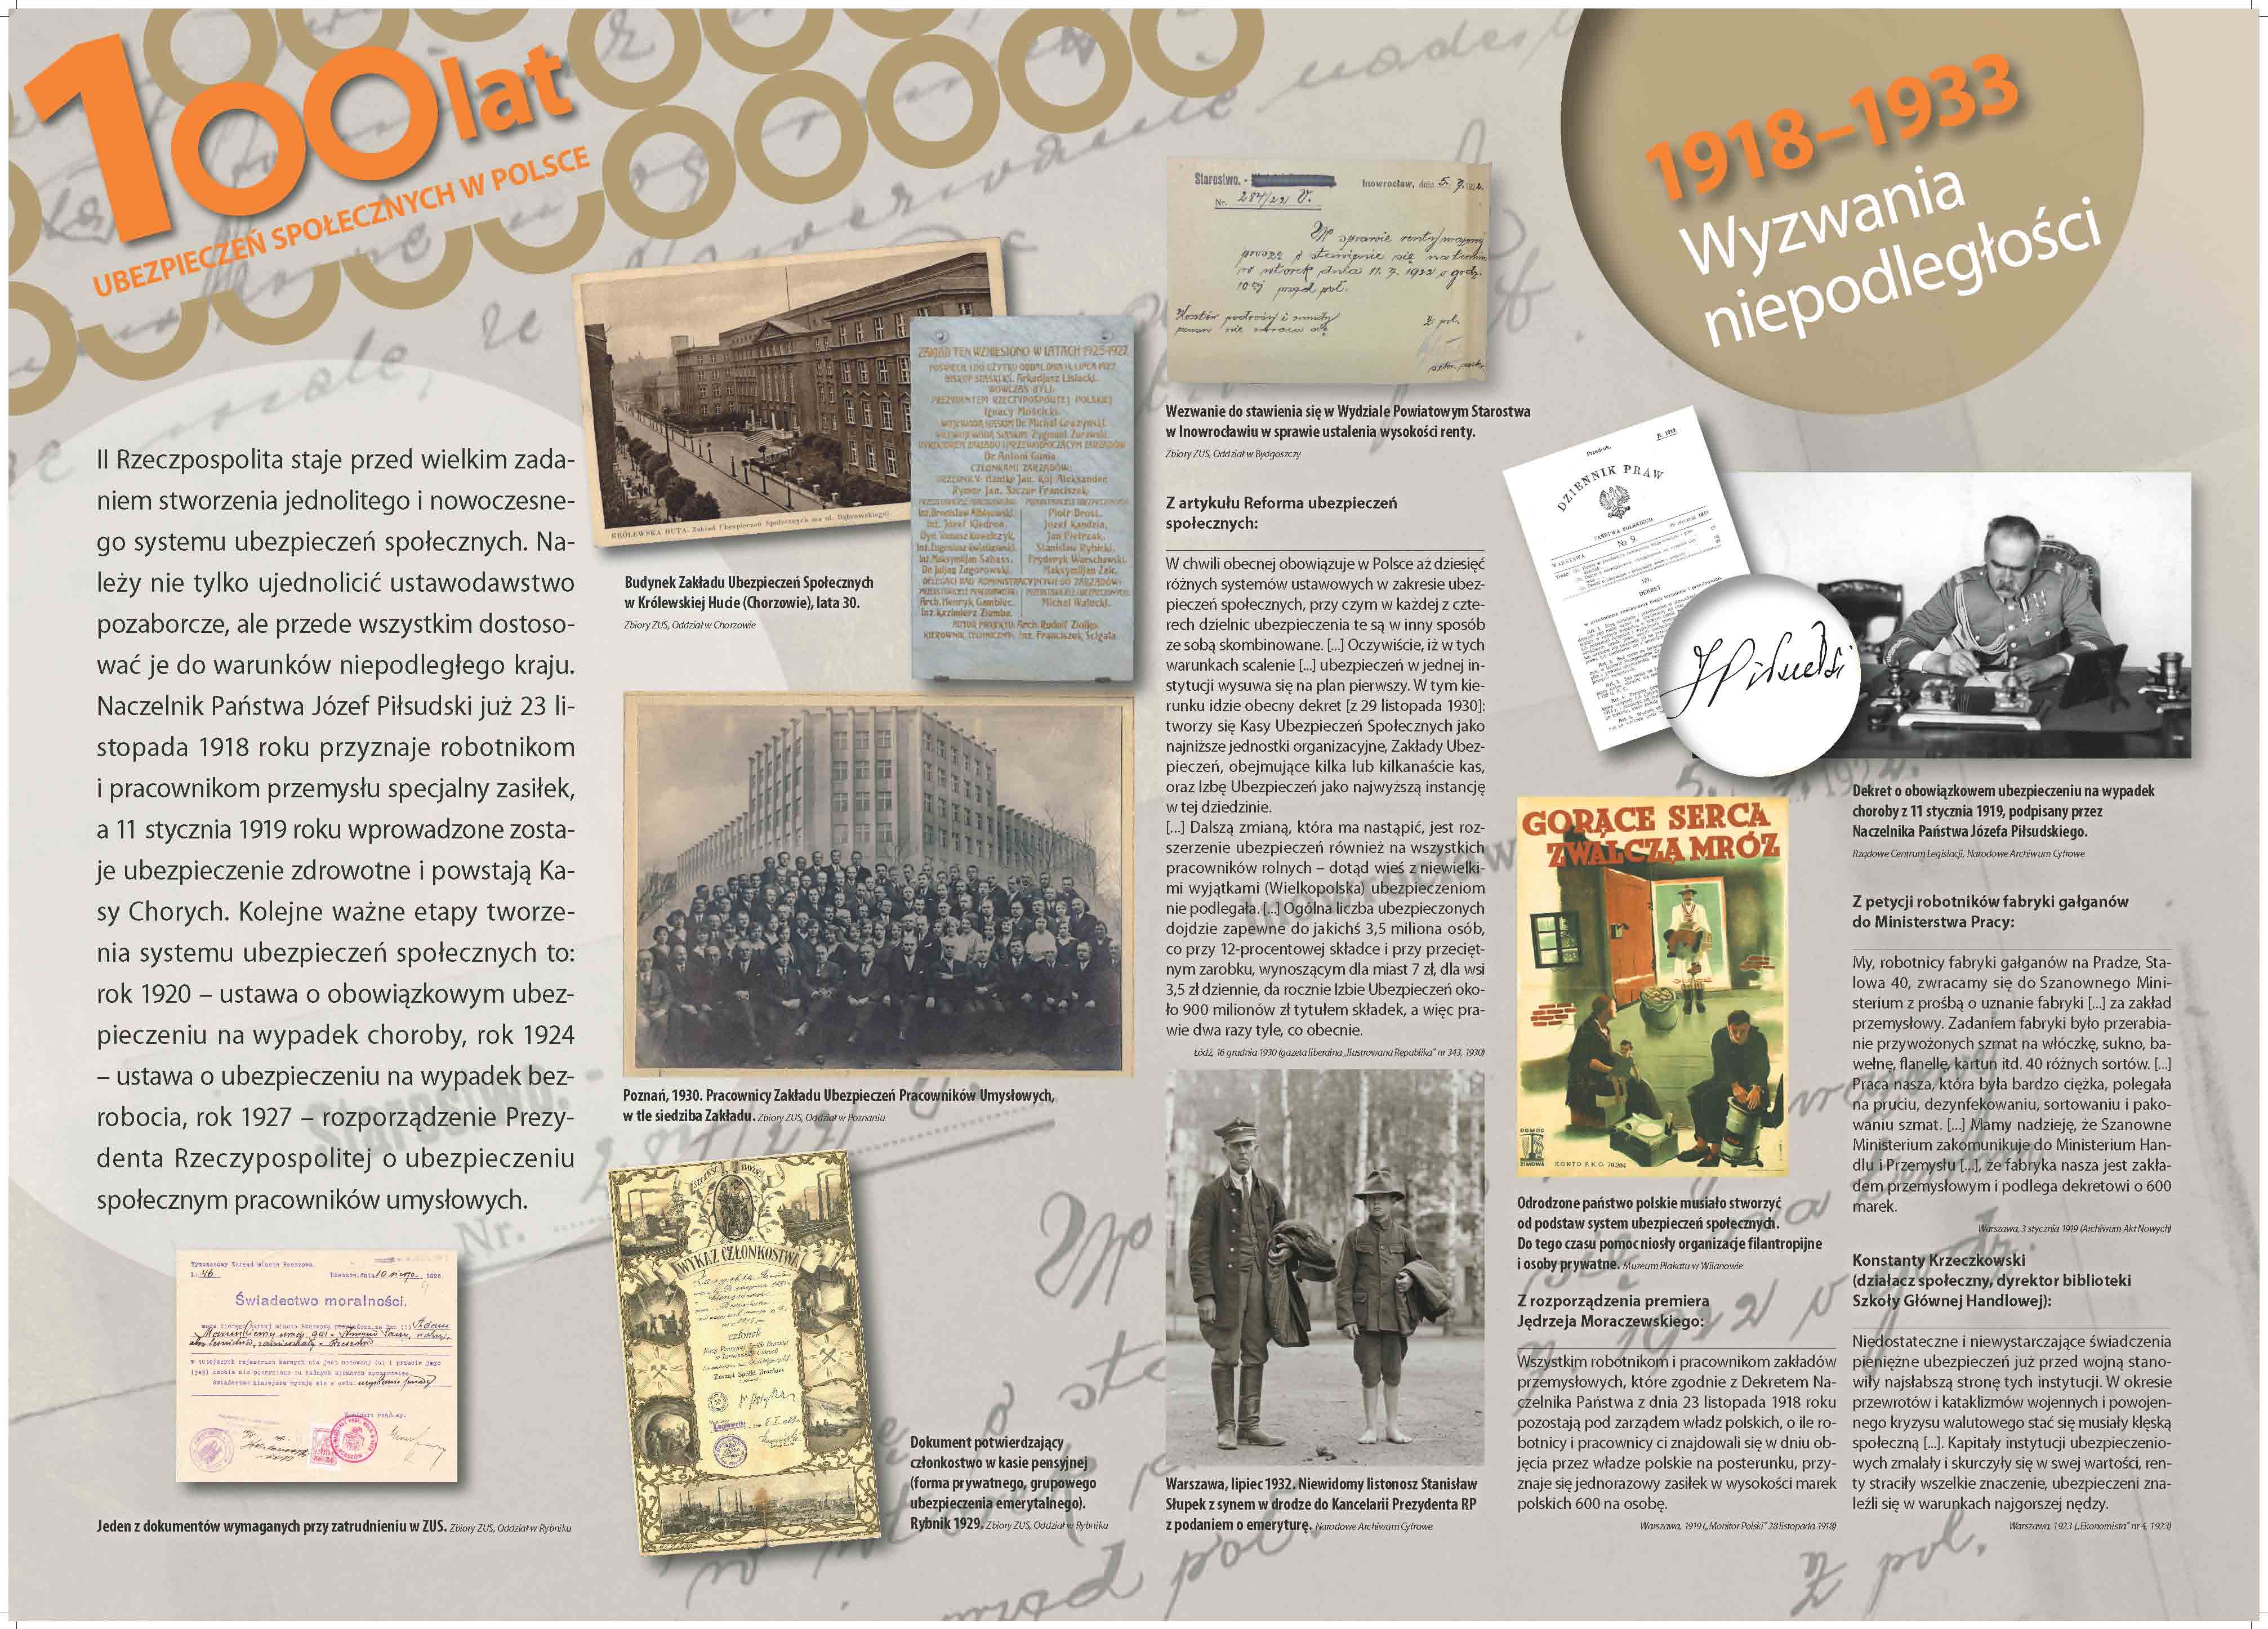 wystawa jubileuszowa - plansza nr 3 Wyzwania niepodległości 1918-1933